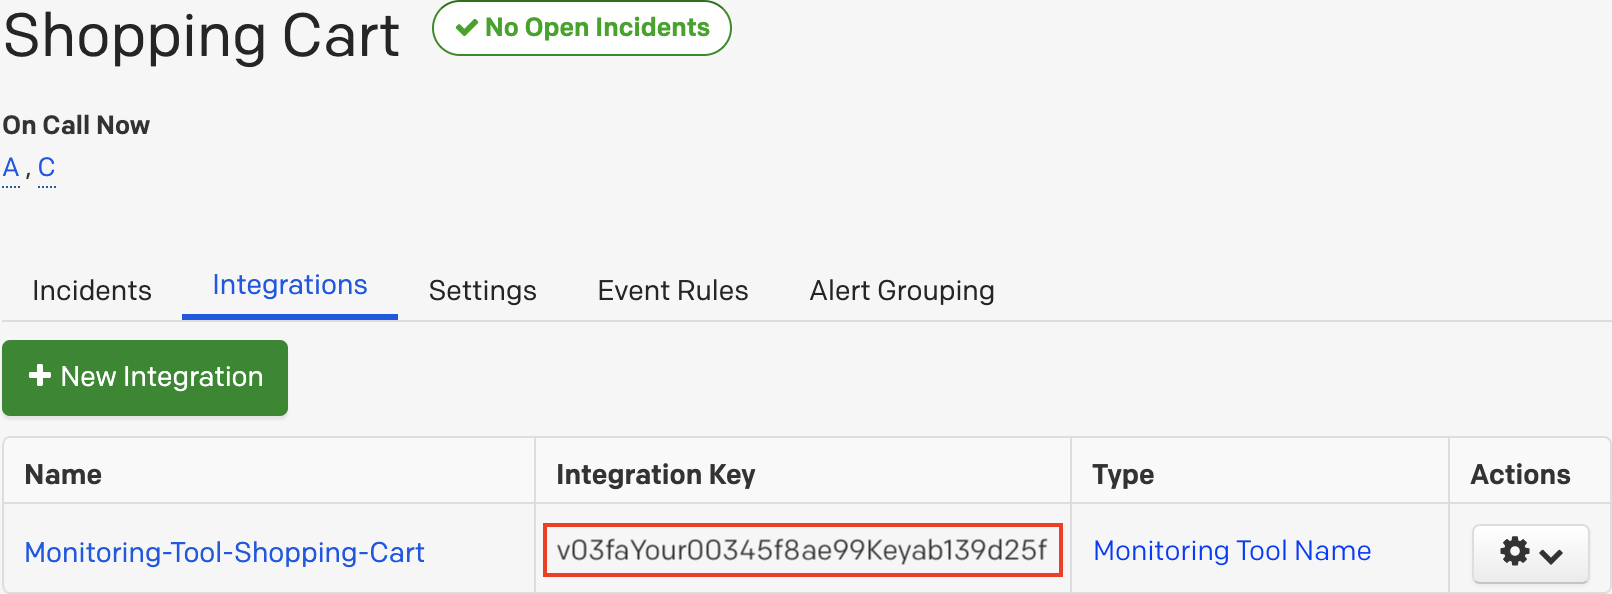 PagerDuty Integration Key